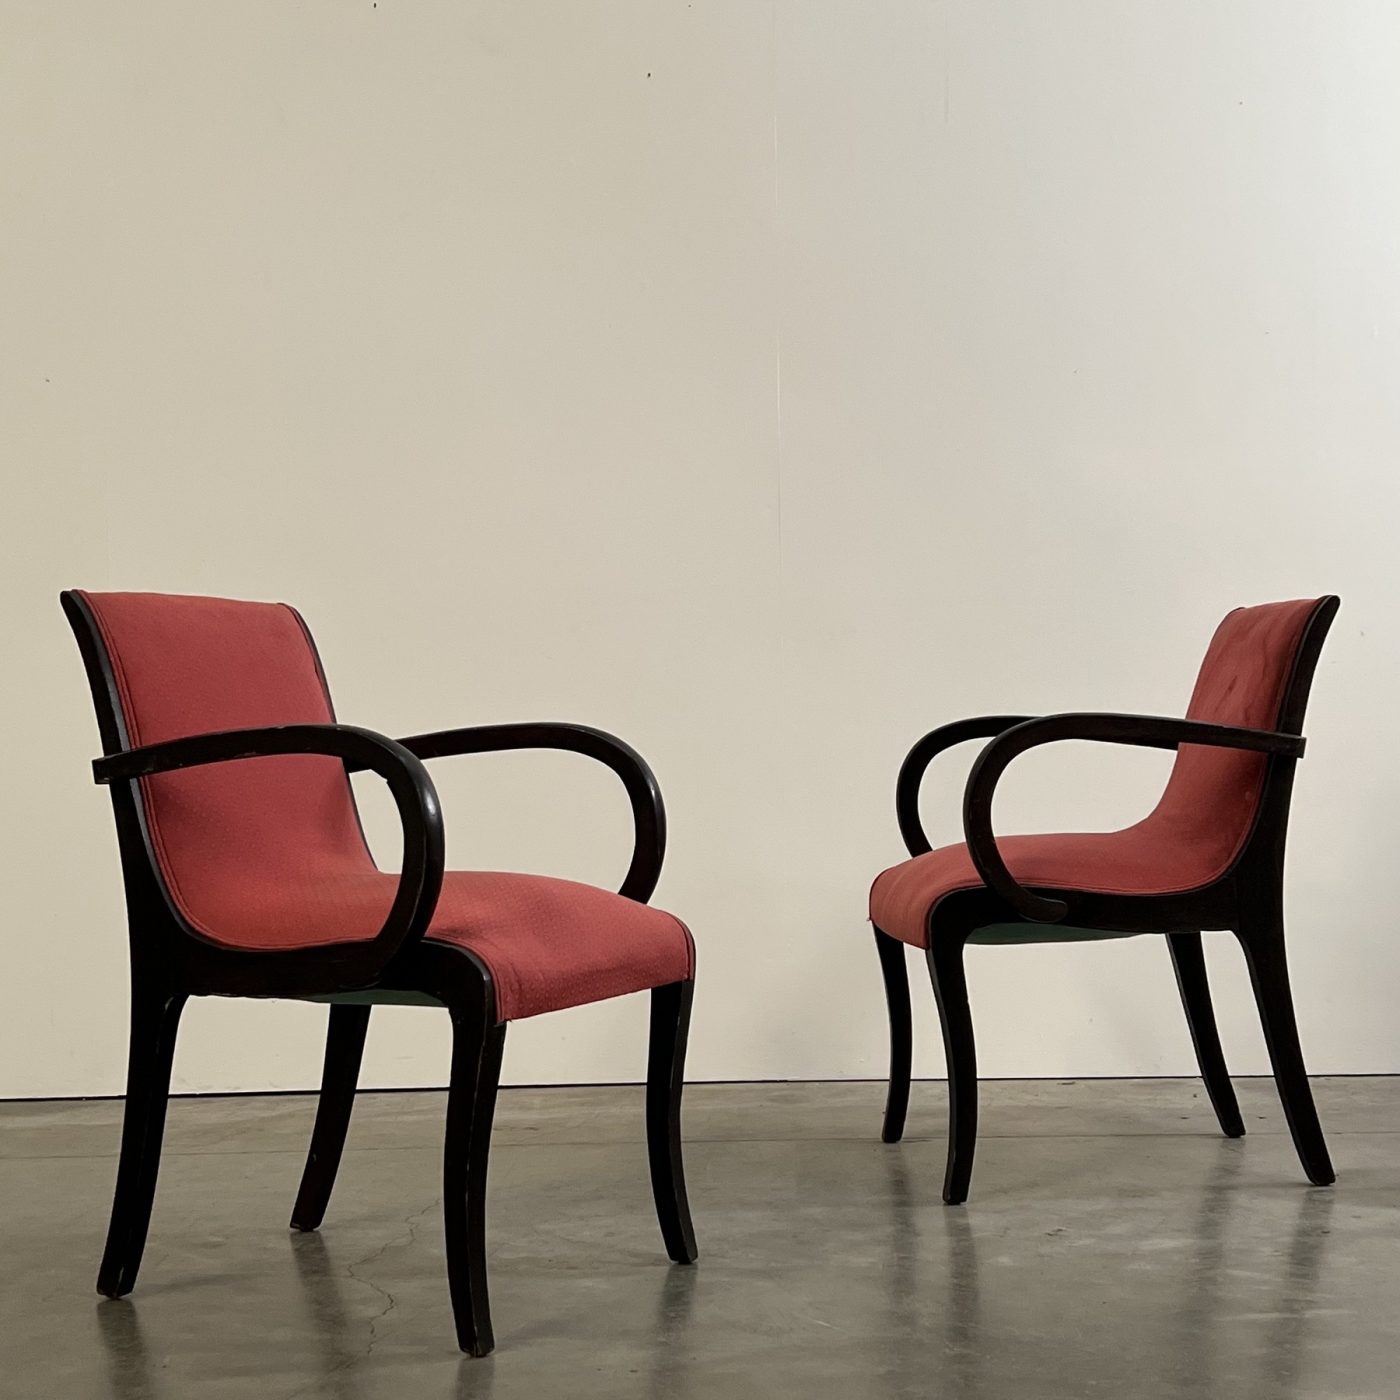 objet-vagabond-artdeco-armchairs0004